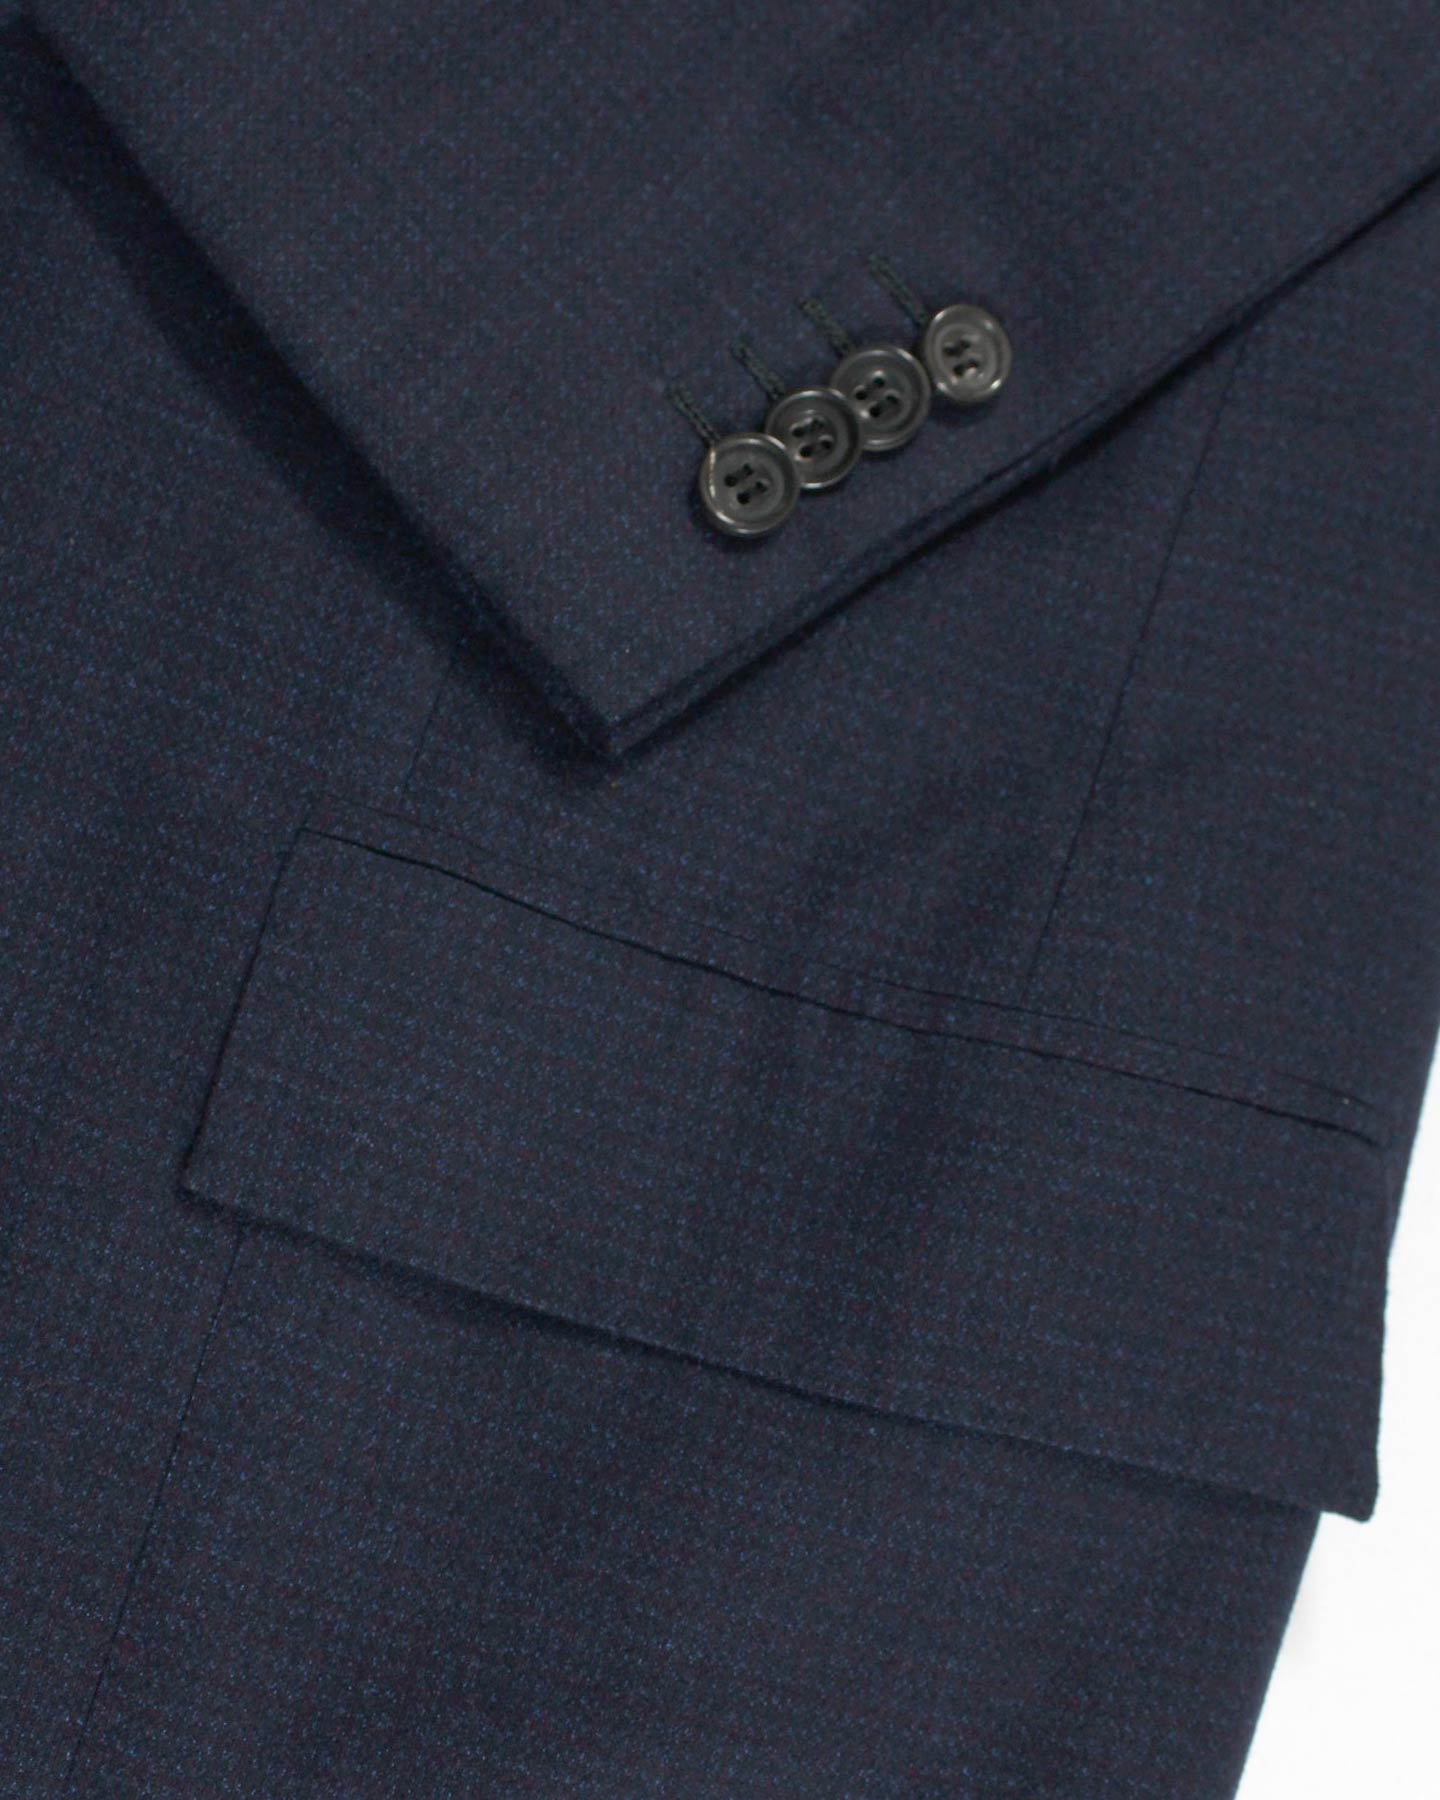 Kiton Men Suit Dark Blue Purple 14 Micron Wool Silk EUR 48 - US 38 - Tie  Deals